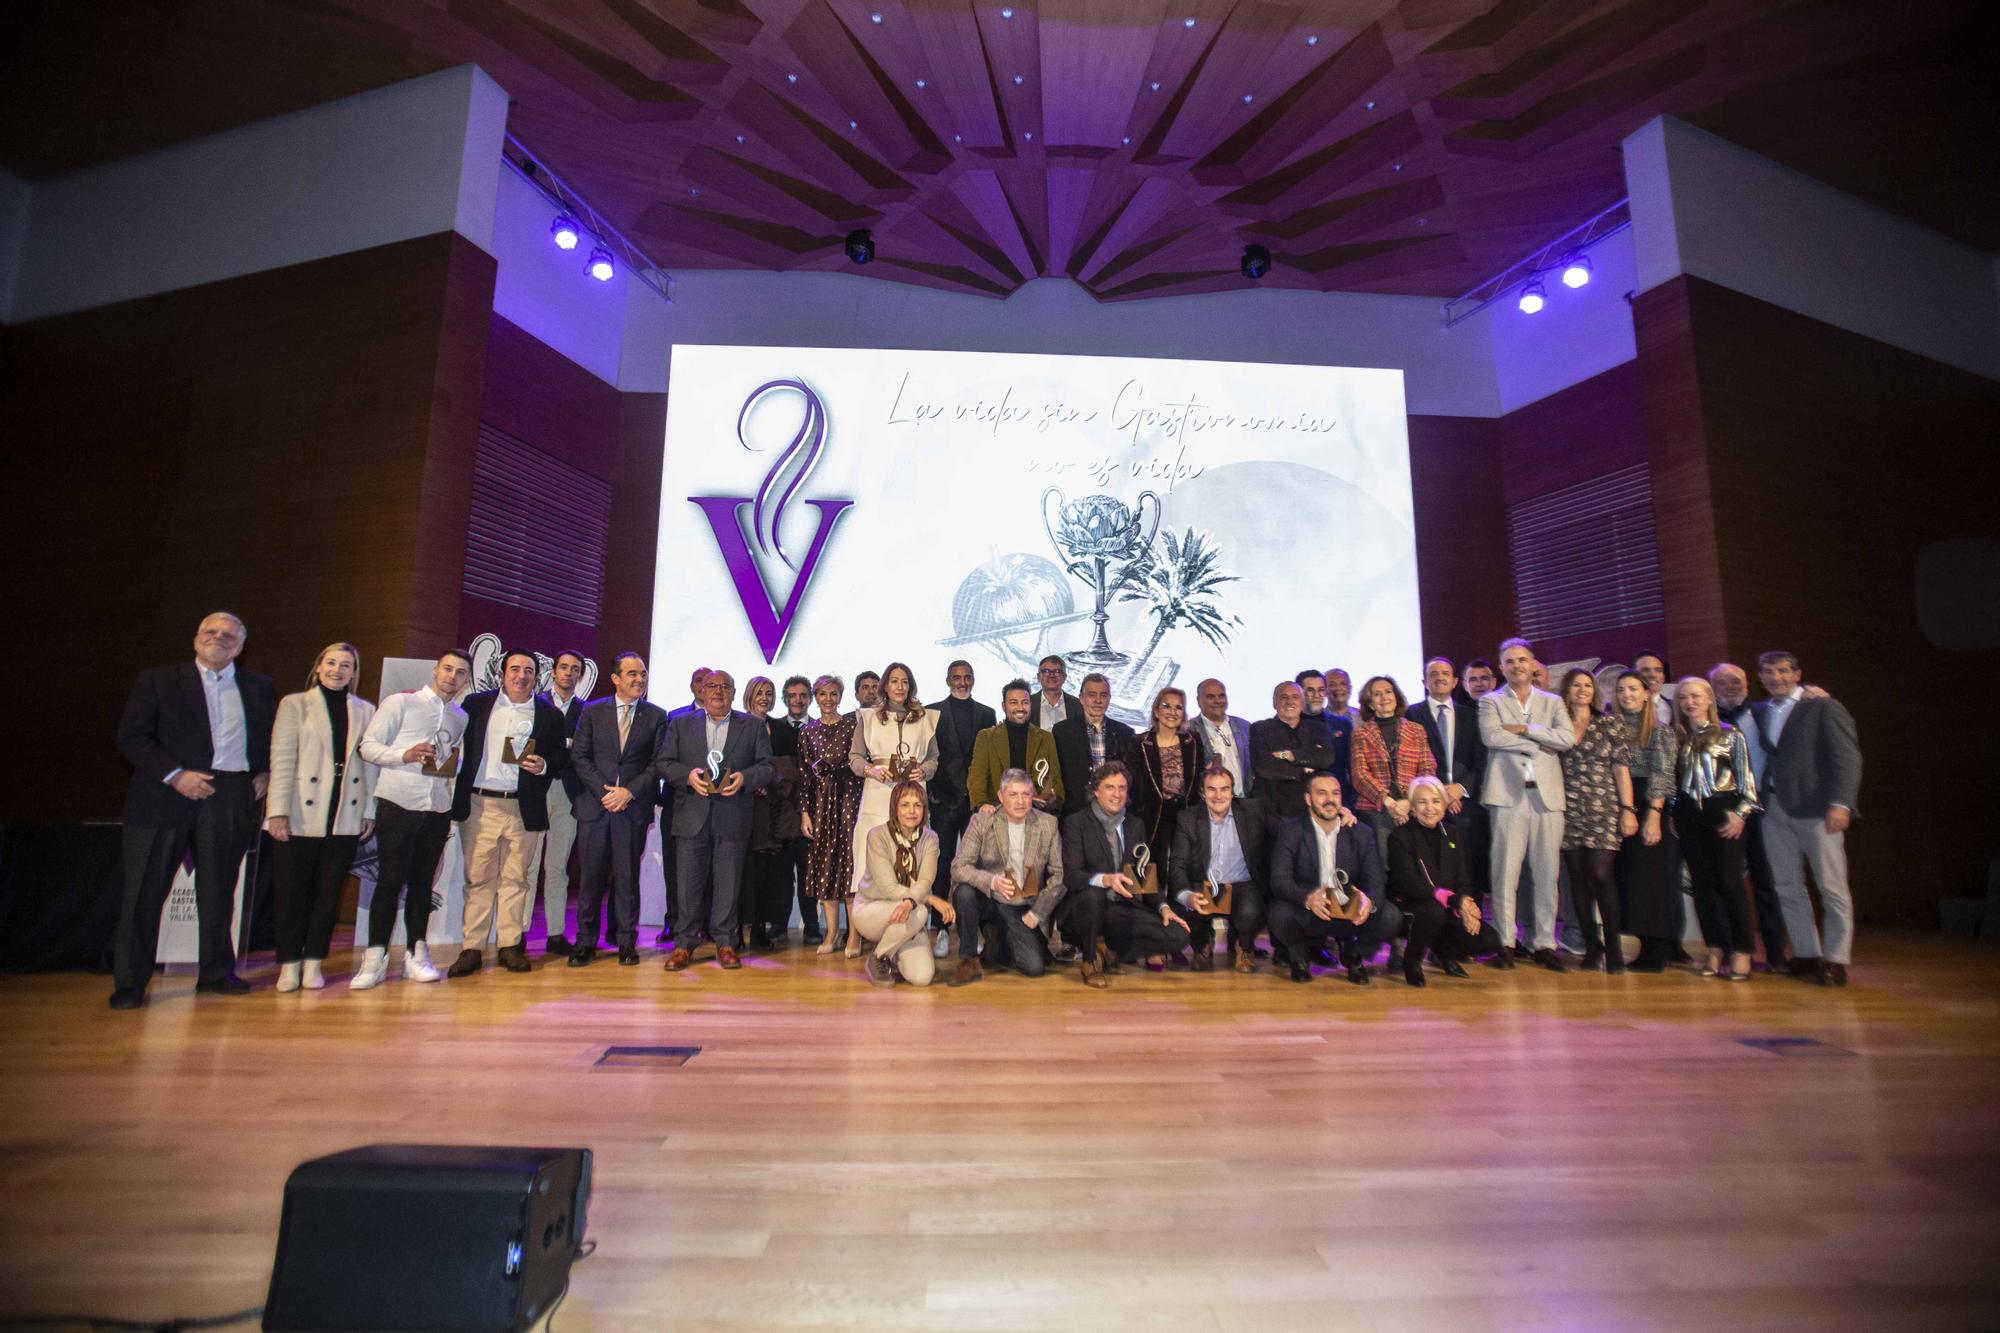 Alicante brilla en los Premios de Gastronomía de la Comunidad Valenciana